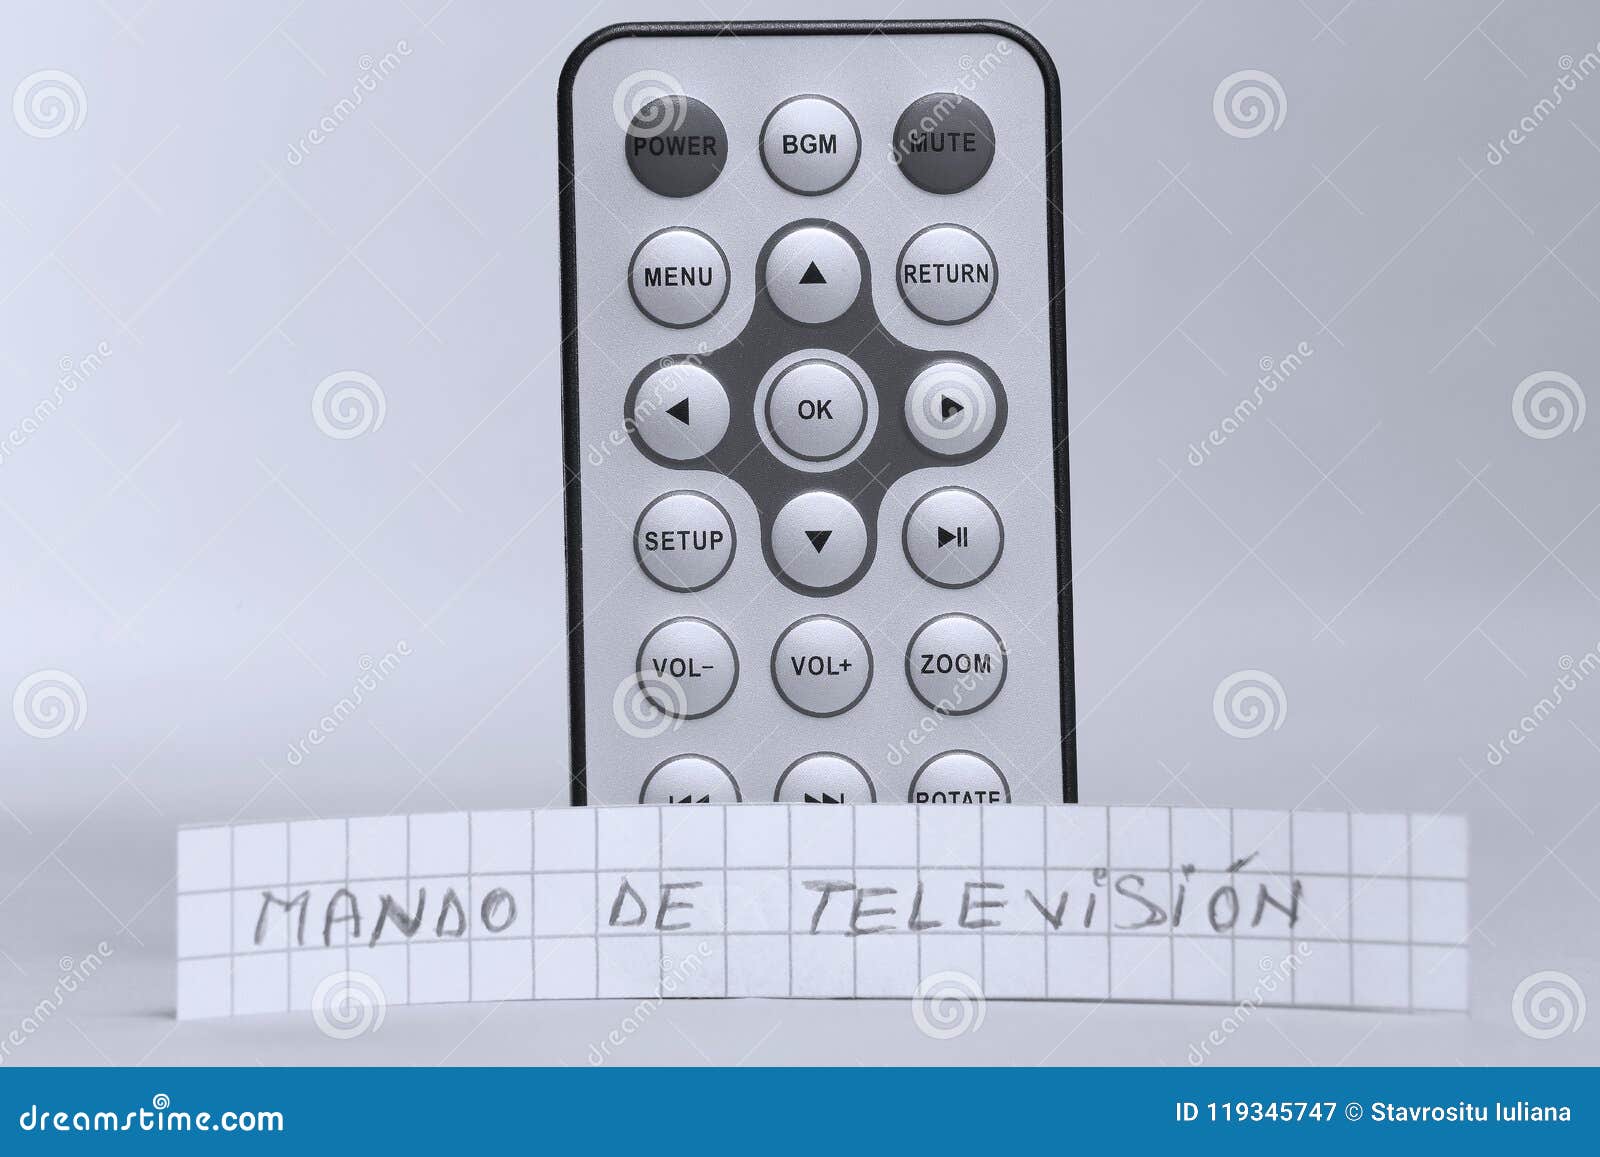 remote control in english and mando de televisiÃÂ³n the spanish word